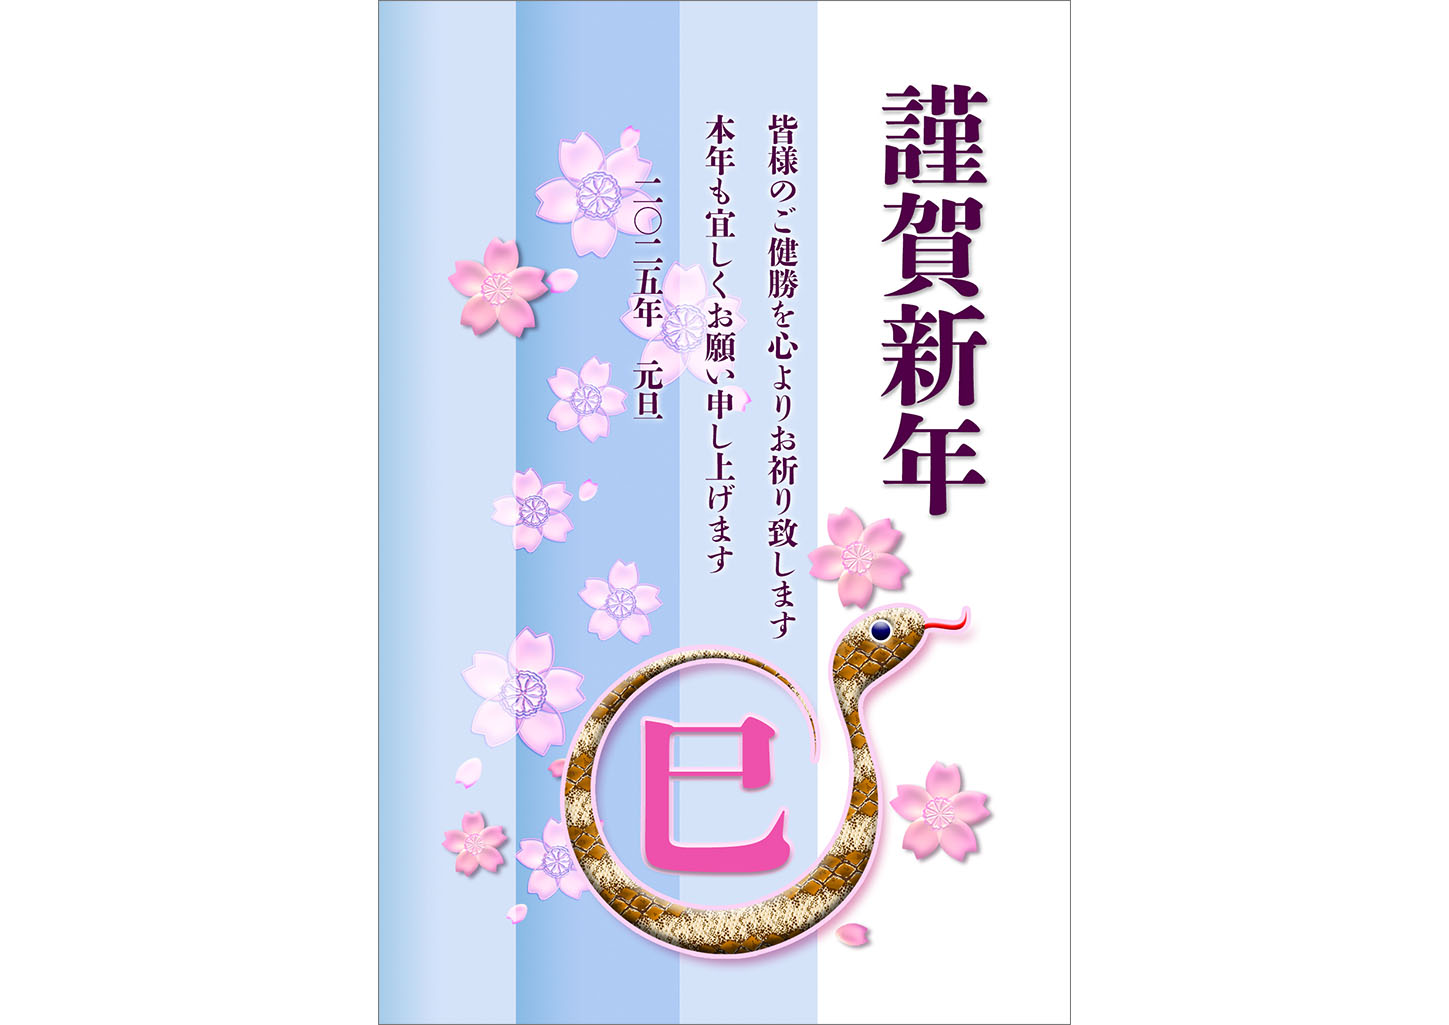 桜と模様のある蛇の年賀状テンプレート無料デザイン素材